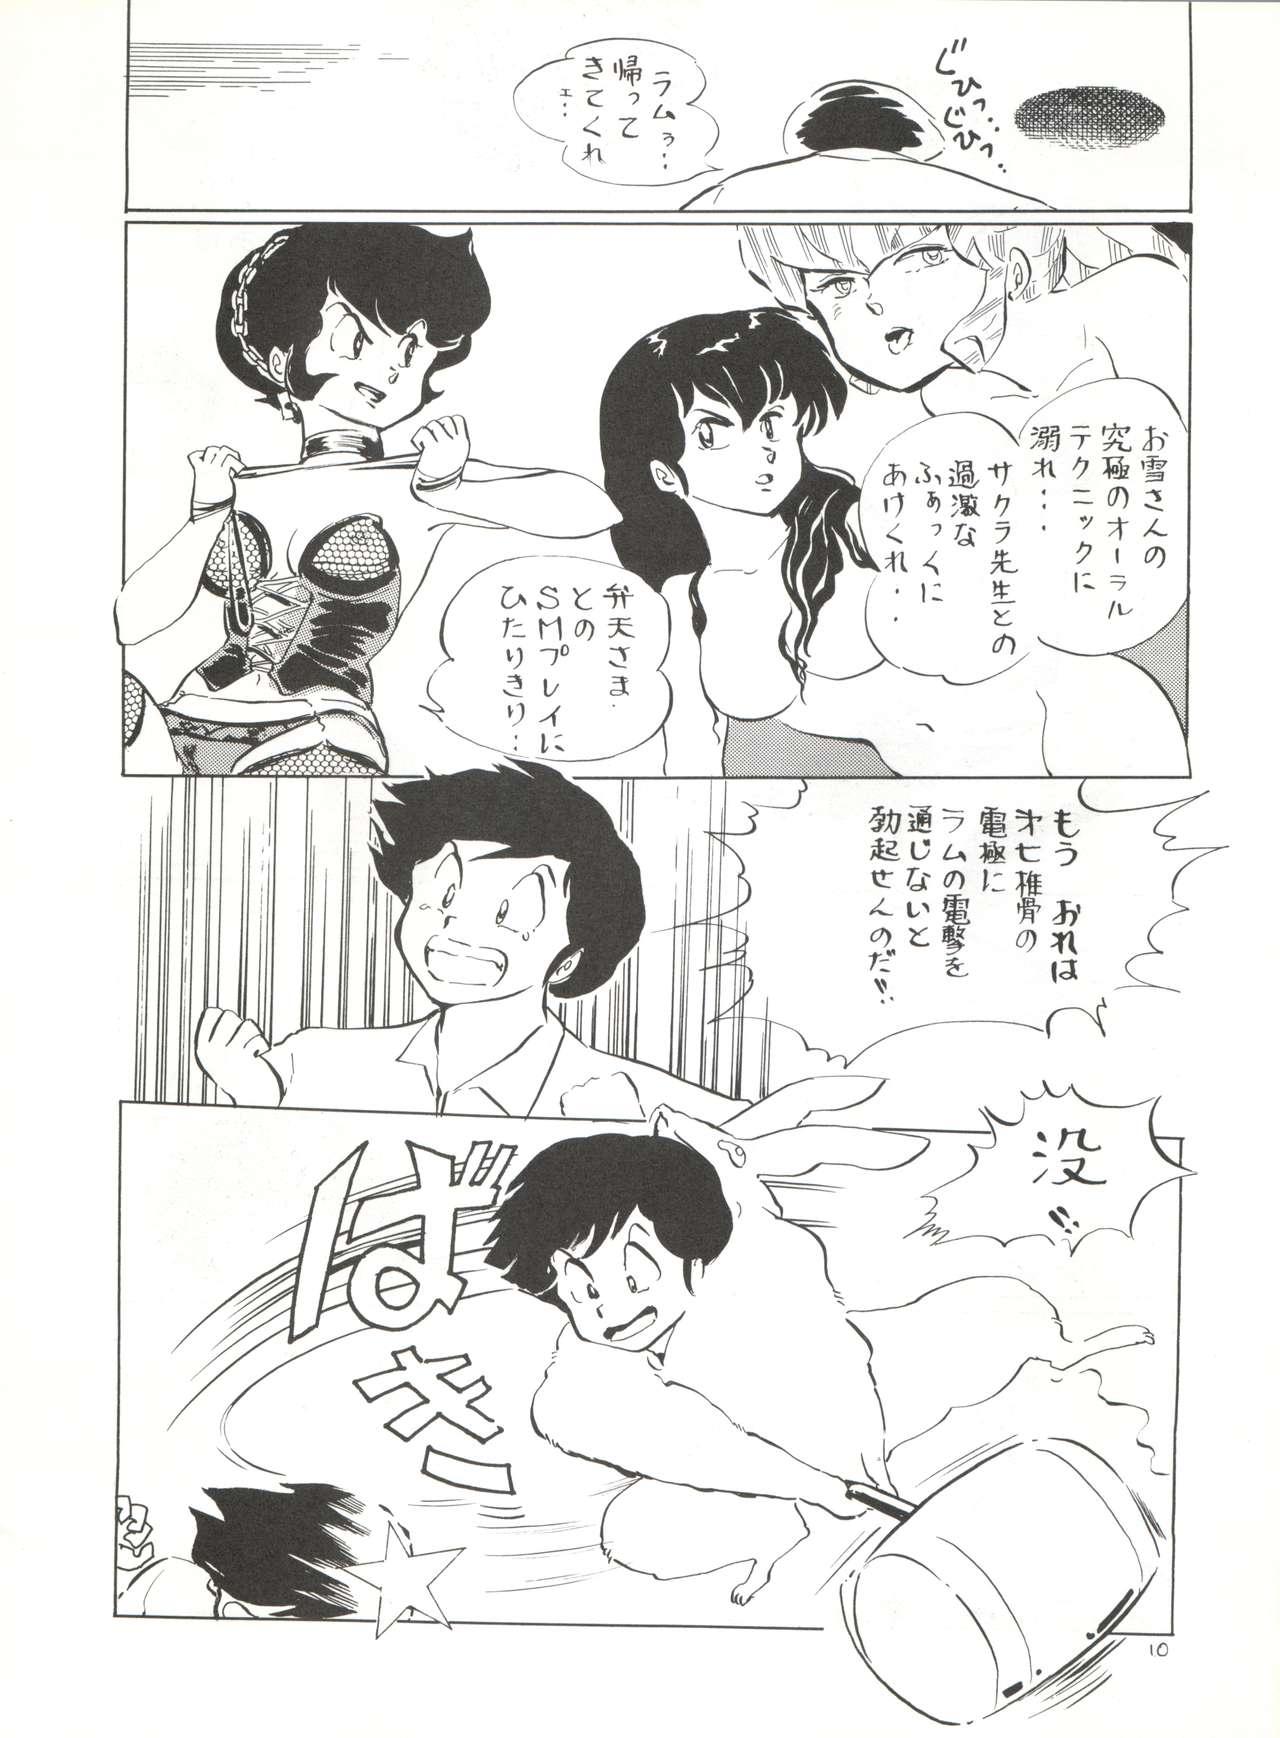 Masturbating Natsu no Arashi - Urusei yatsura Slave - Page 10